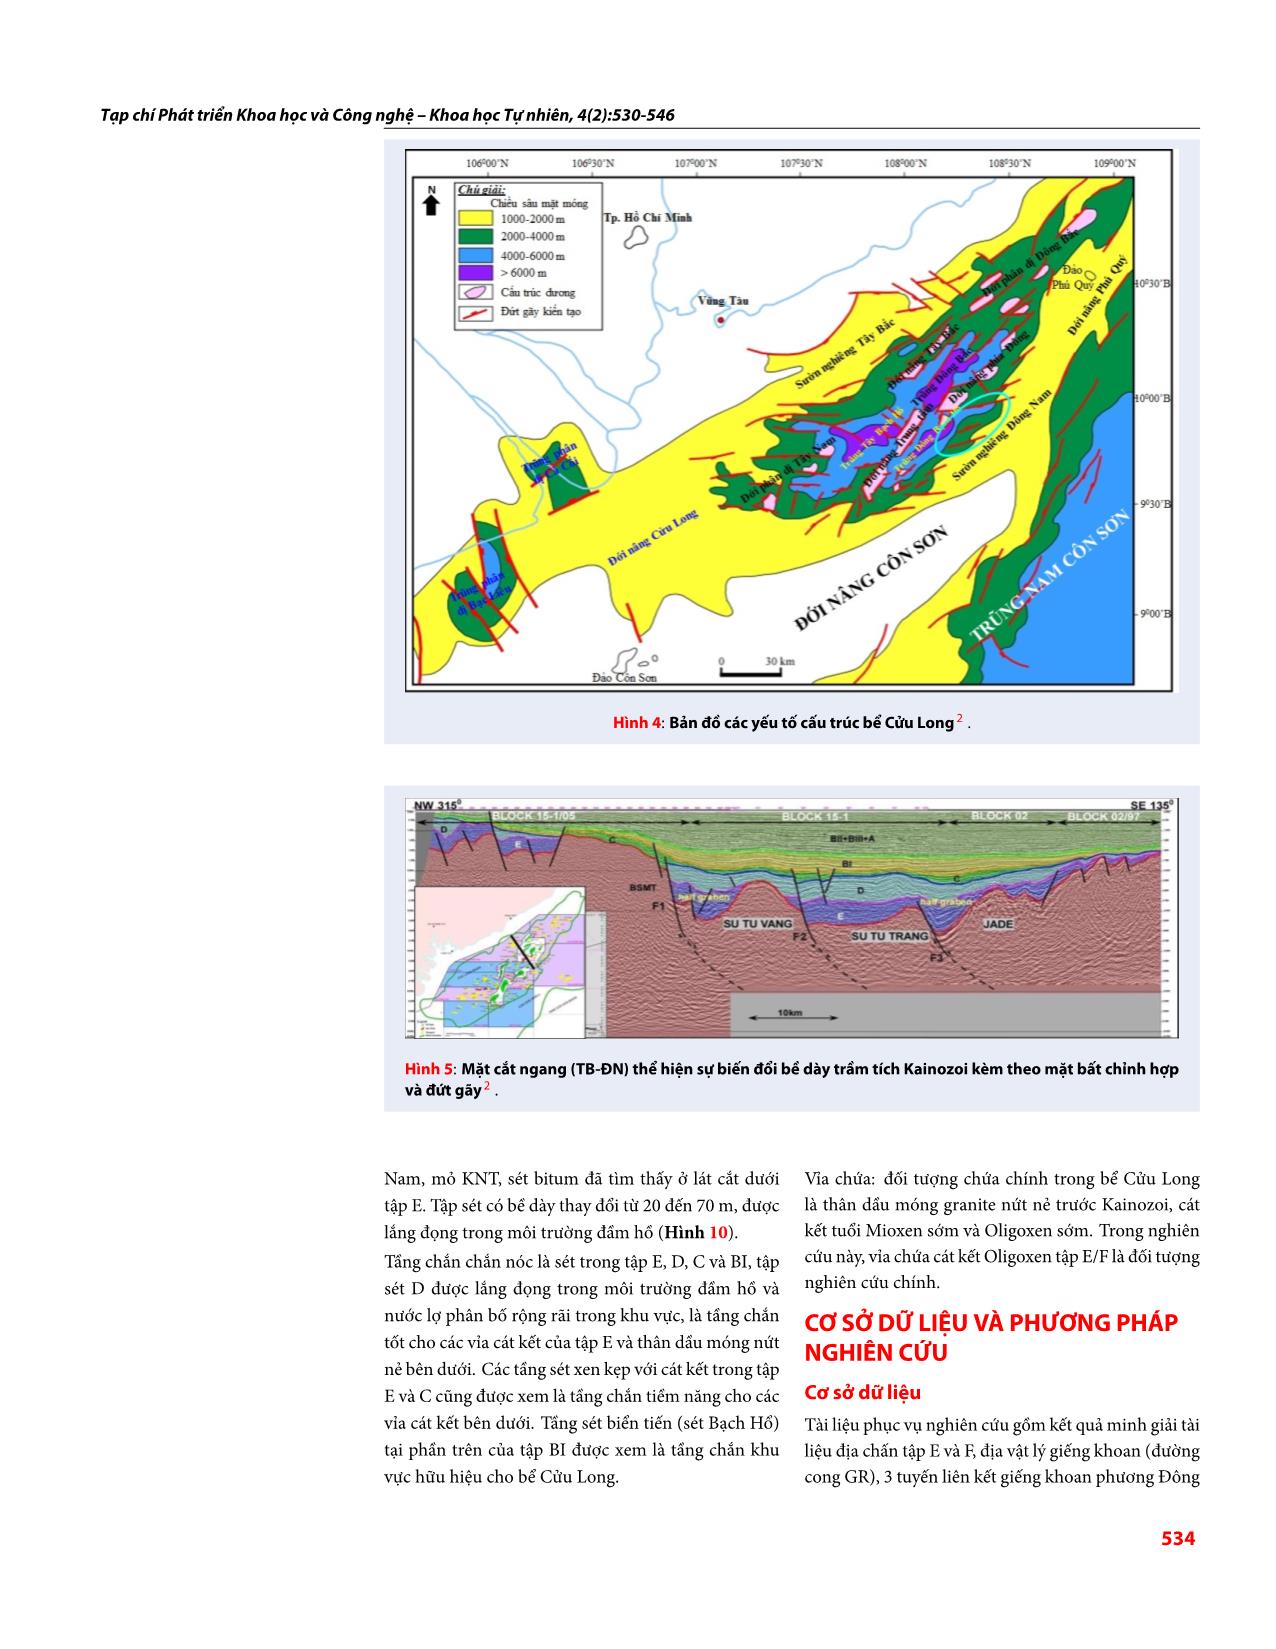 Môi trường lắng đọng tập E trầm tích Oligoxen và dự báo phân bố thân cát khu vực Đông Nam bể Cửu Long trang 5